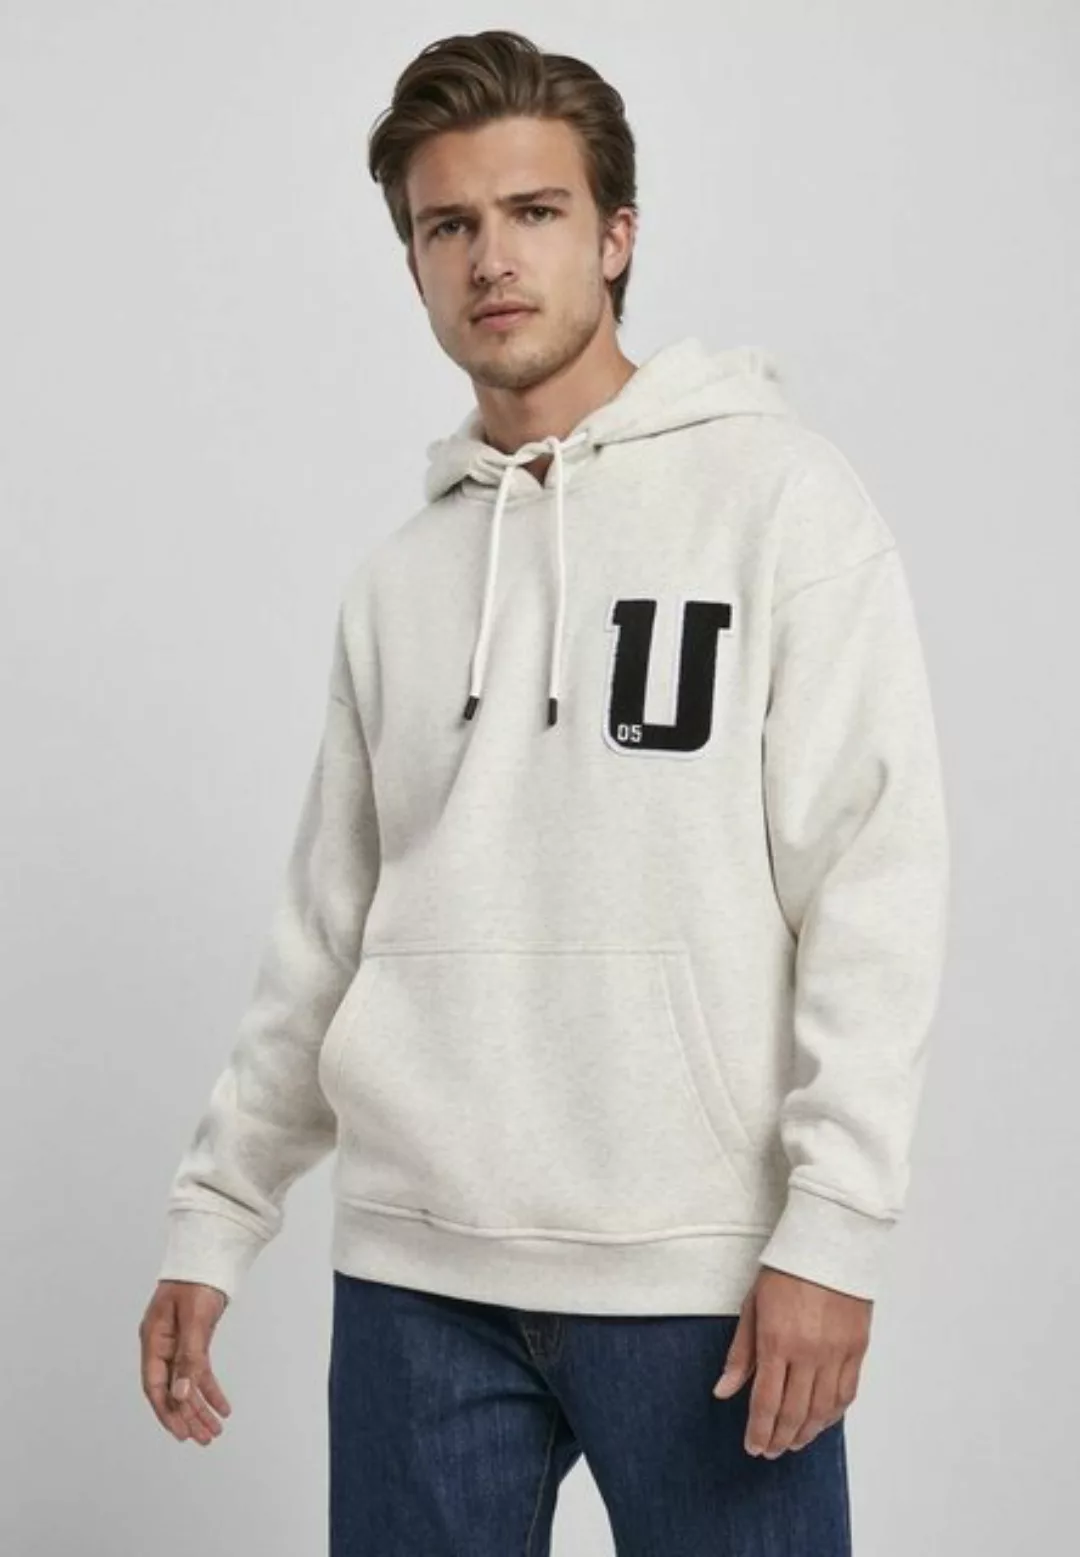 URBAN CLASSICS Kapuzensweatshirt "Urban Classics Herren Oversized Frottee P günstig online kaufen